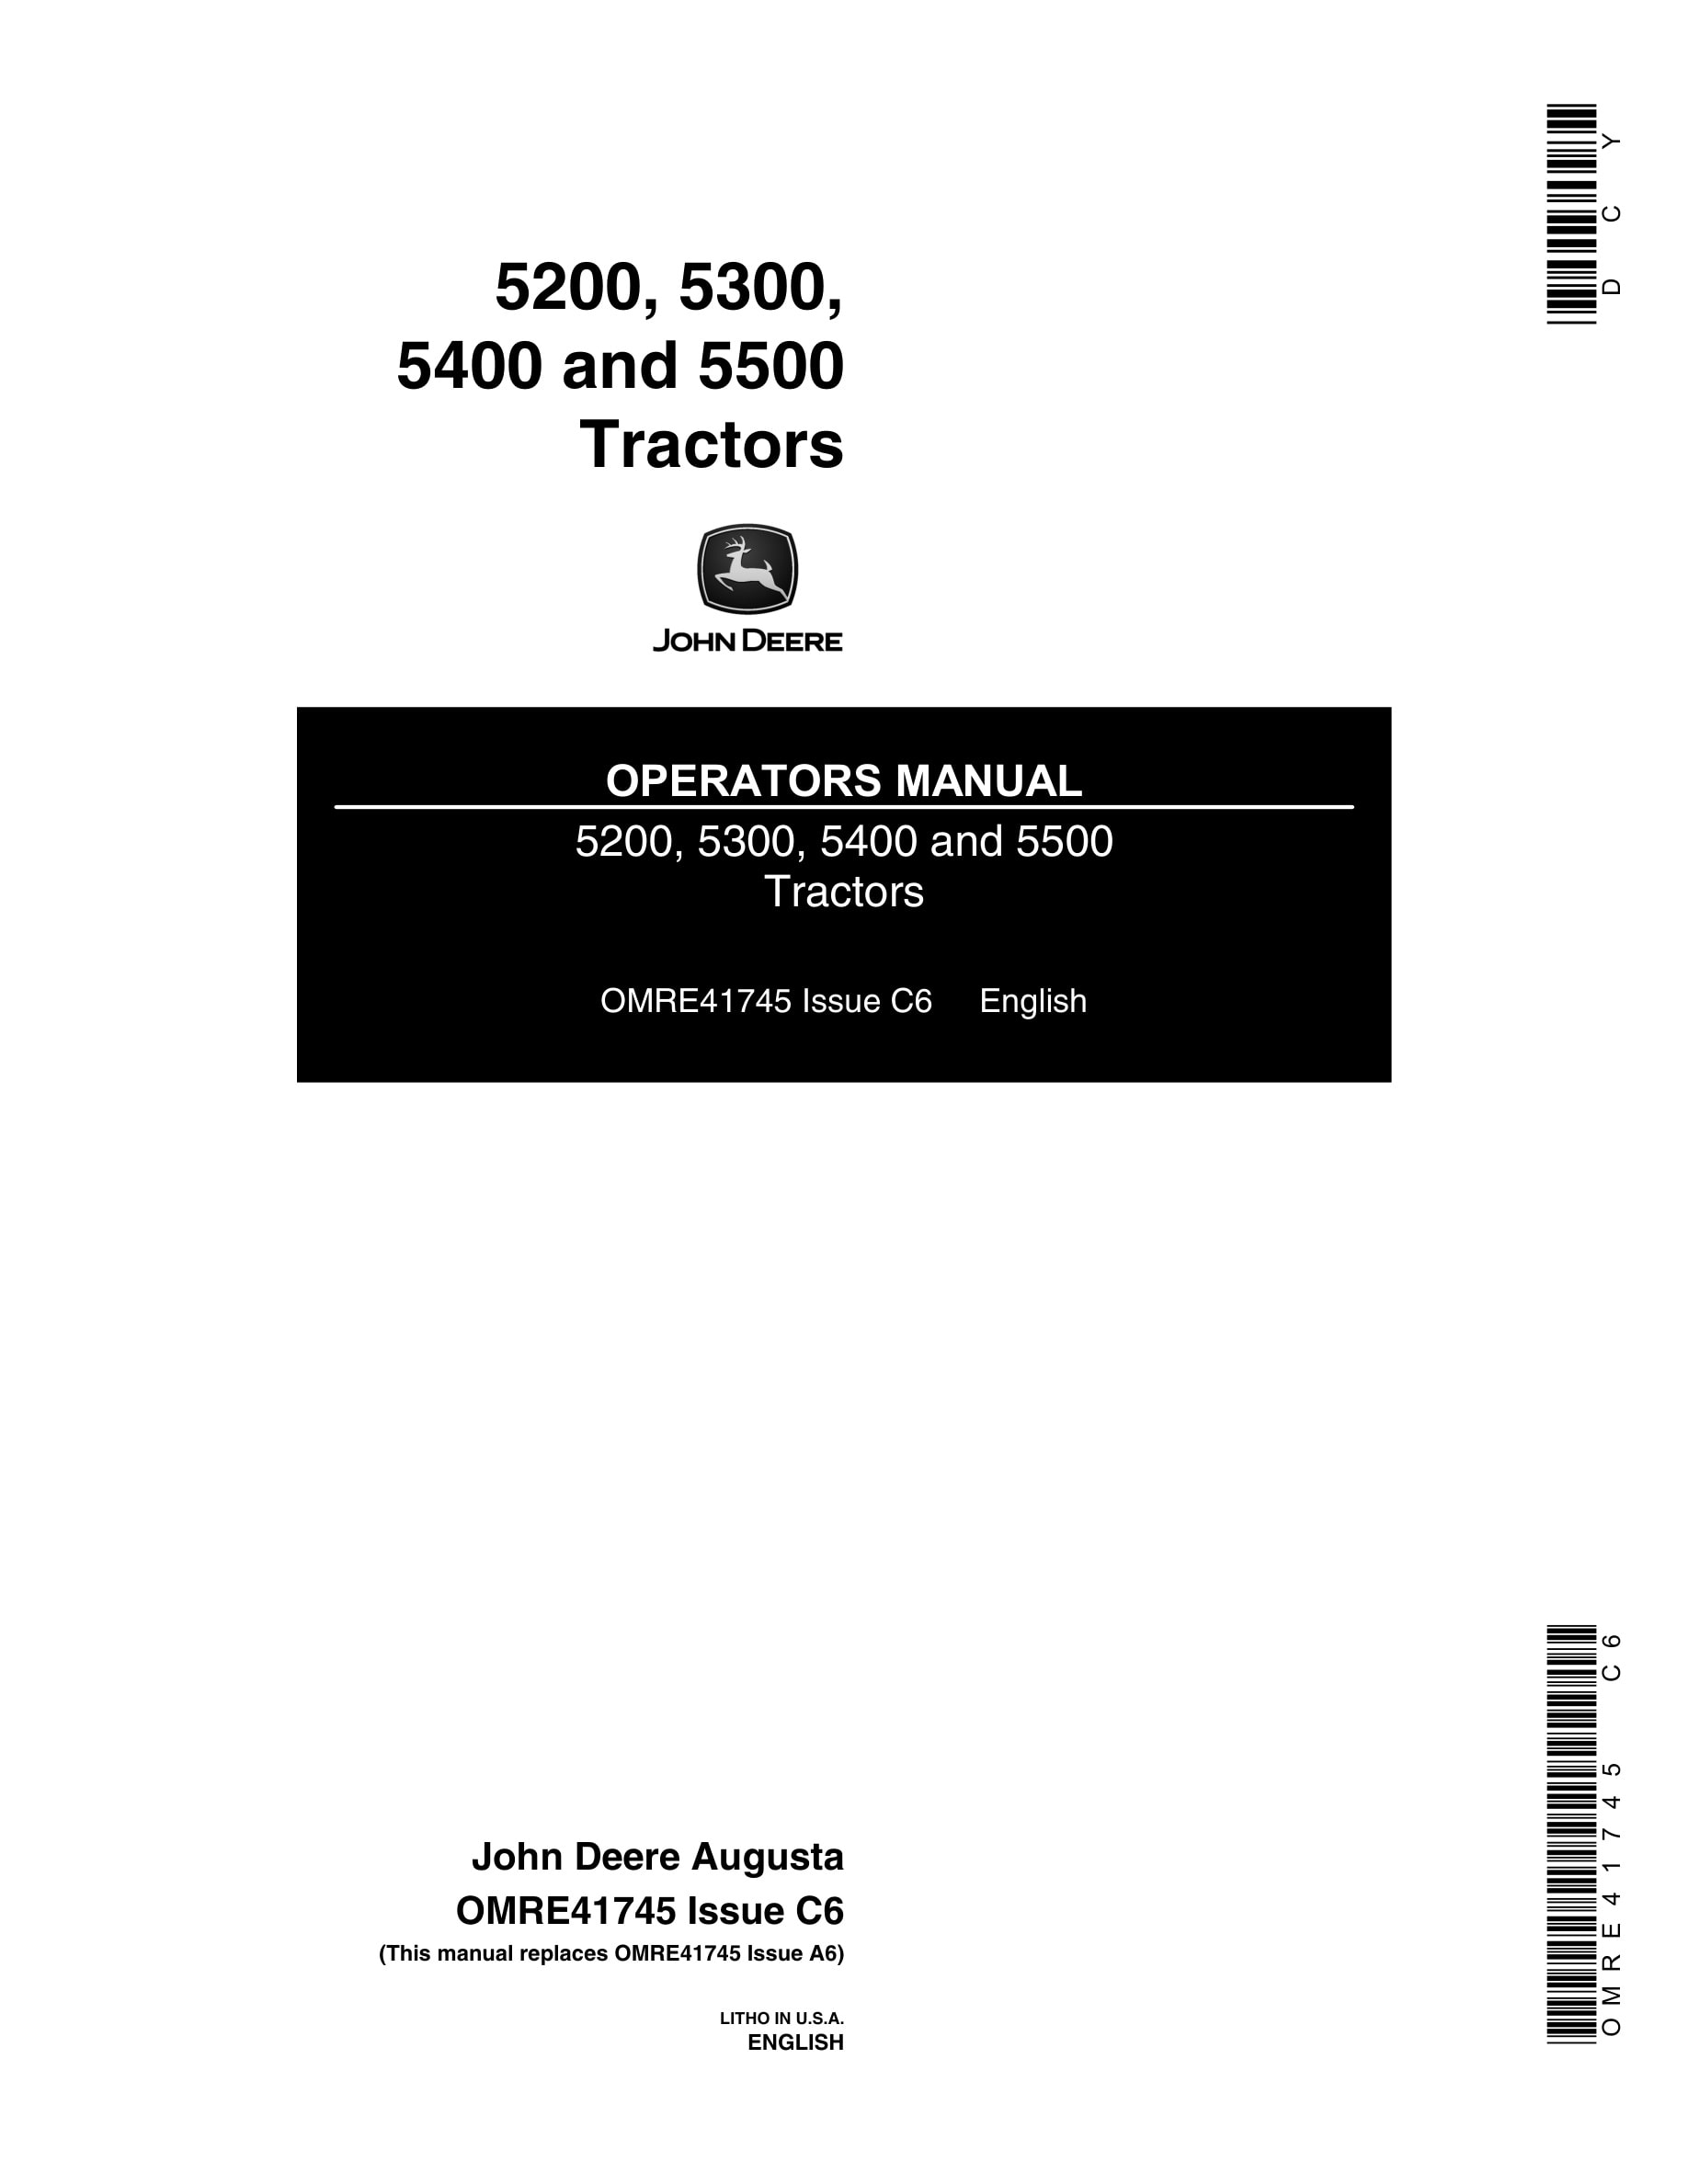 John Deere 5200, 5300, 5400 and 5500 Tractor Operator Manual OMRE41745-1